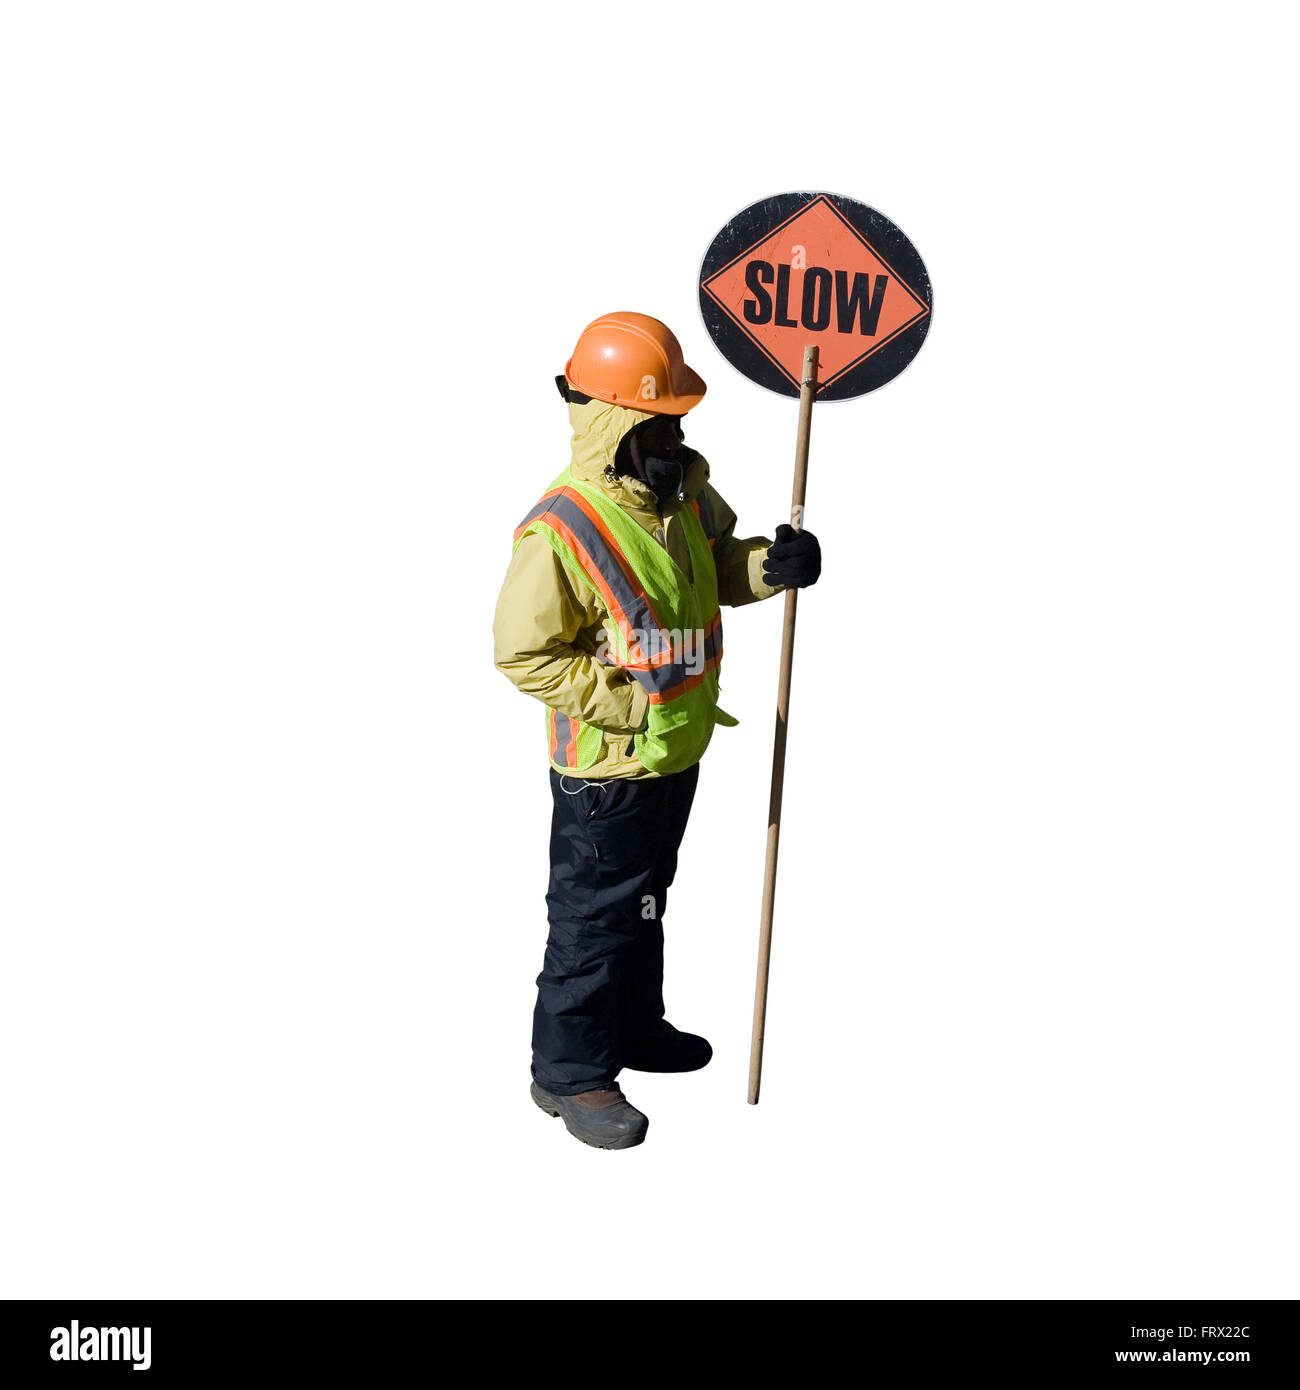 Découper le travailleur de la Construction avec un casque et un gilet orange ronde est titulaire d'un signe sur un poteau avec lenteur imprimé sur elle Banque D'Images